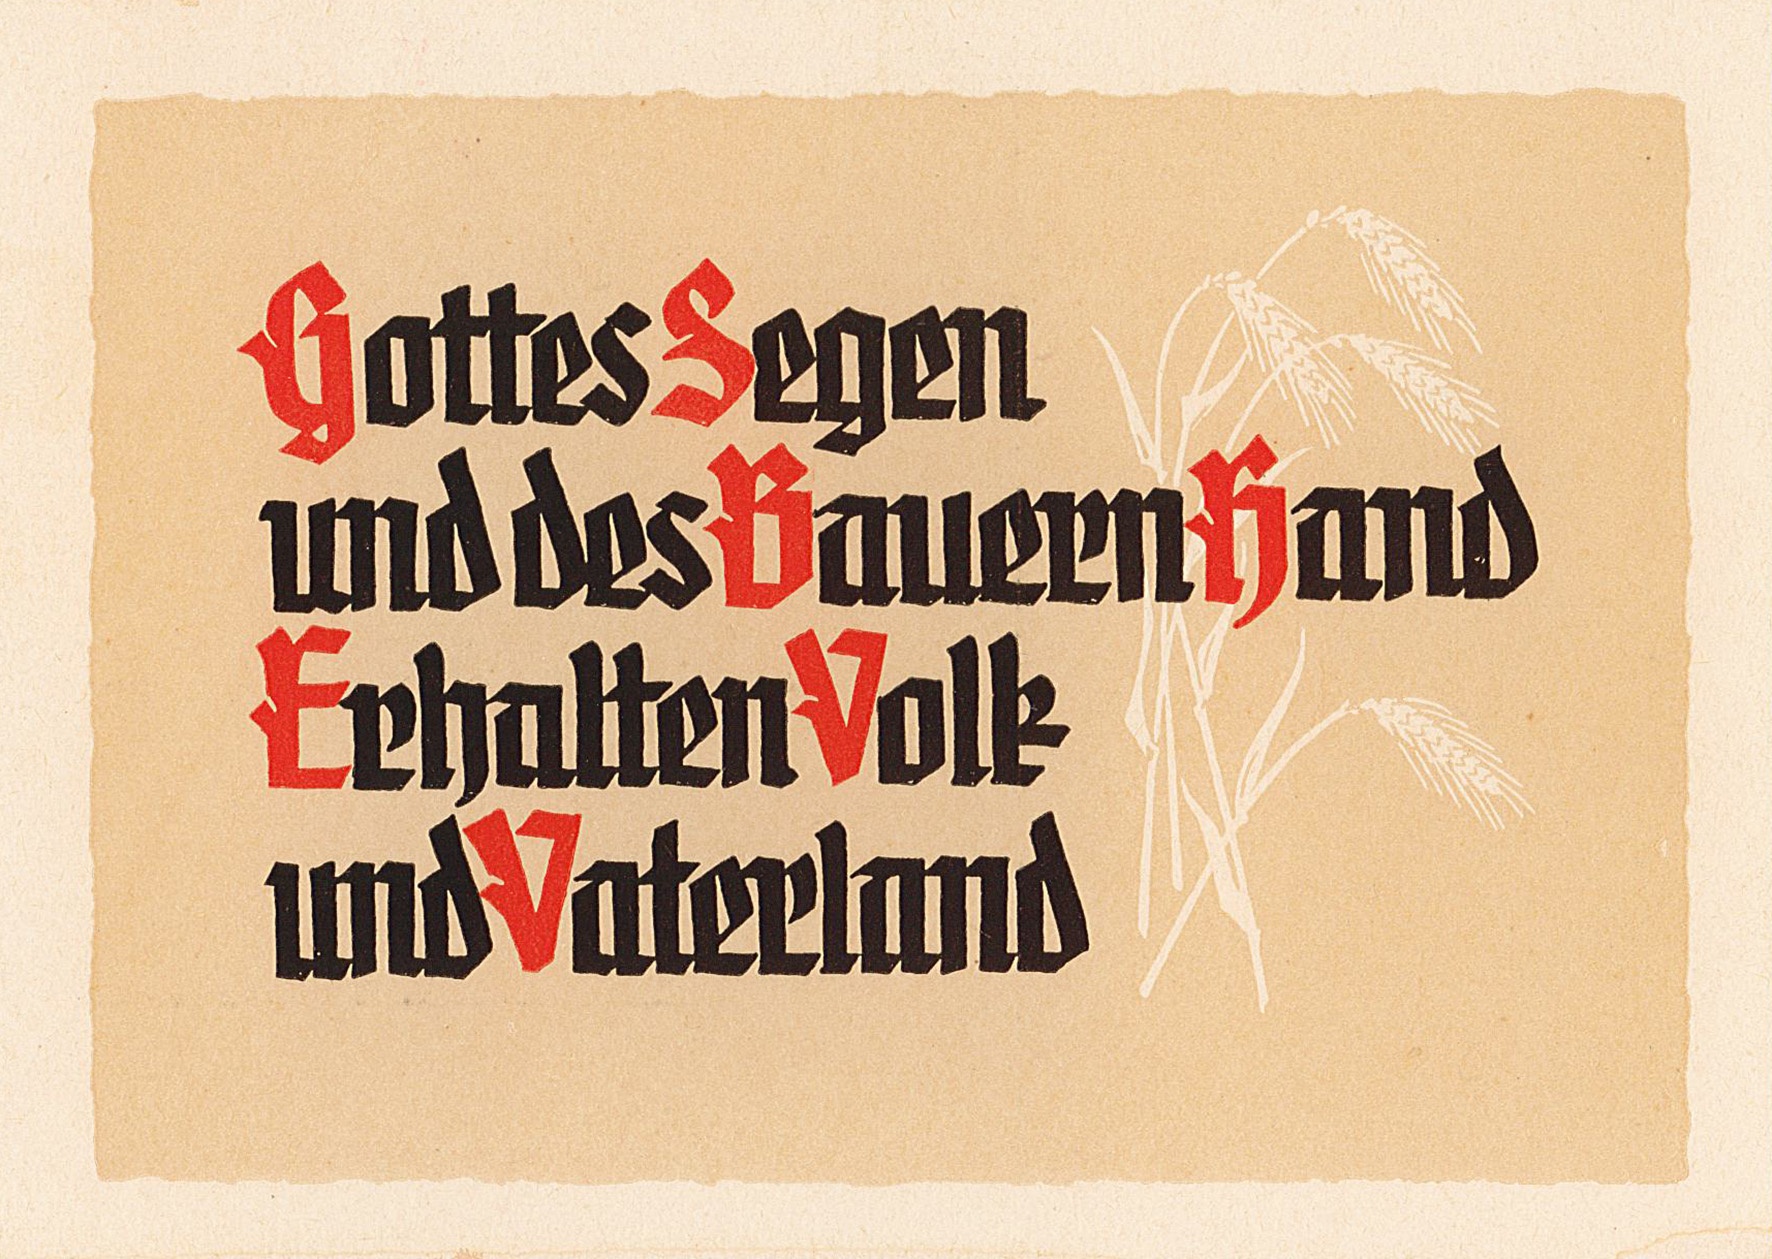 Postkarte "Gottes Segen und des Bauern Hand erhalten Volk und Vaterland" (Museum Wolmirstedt RR-F)